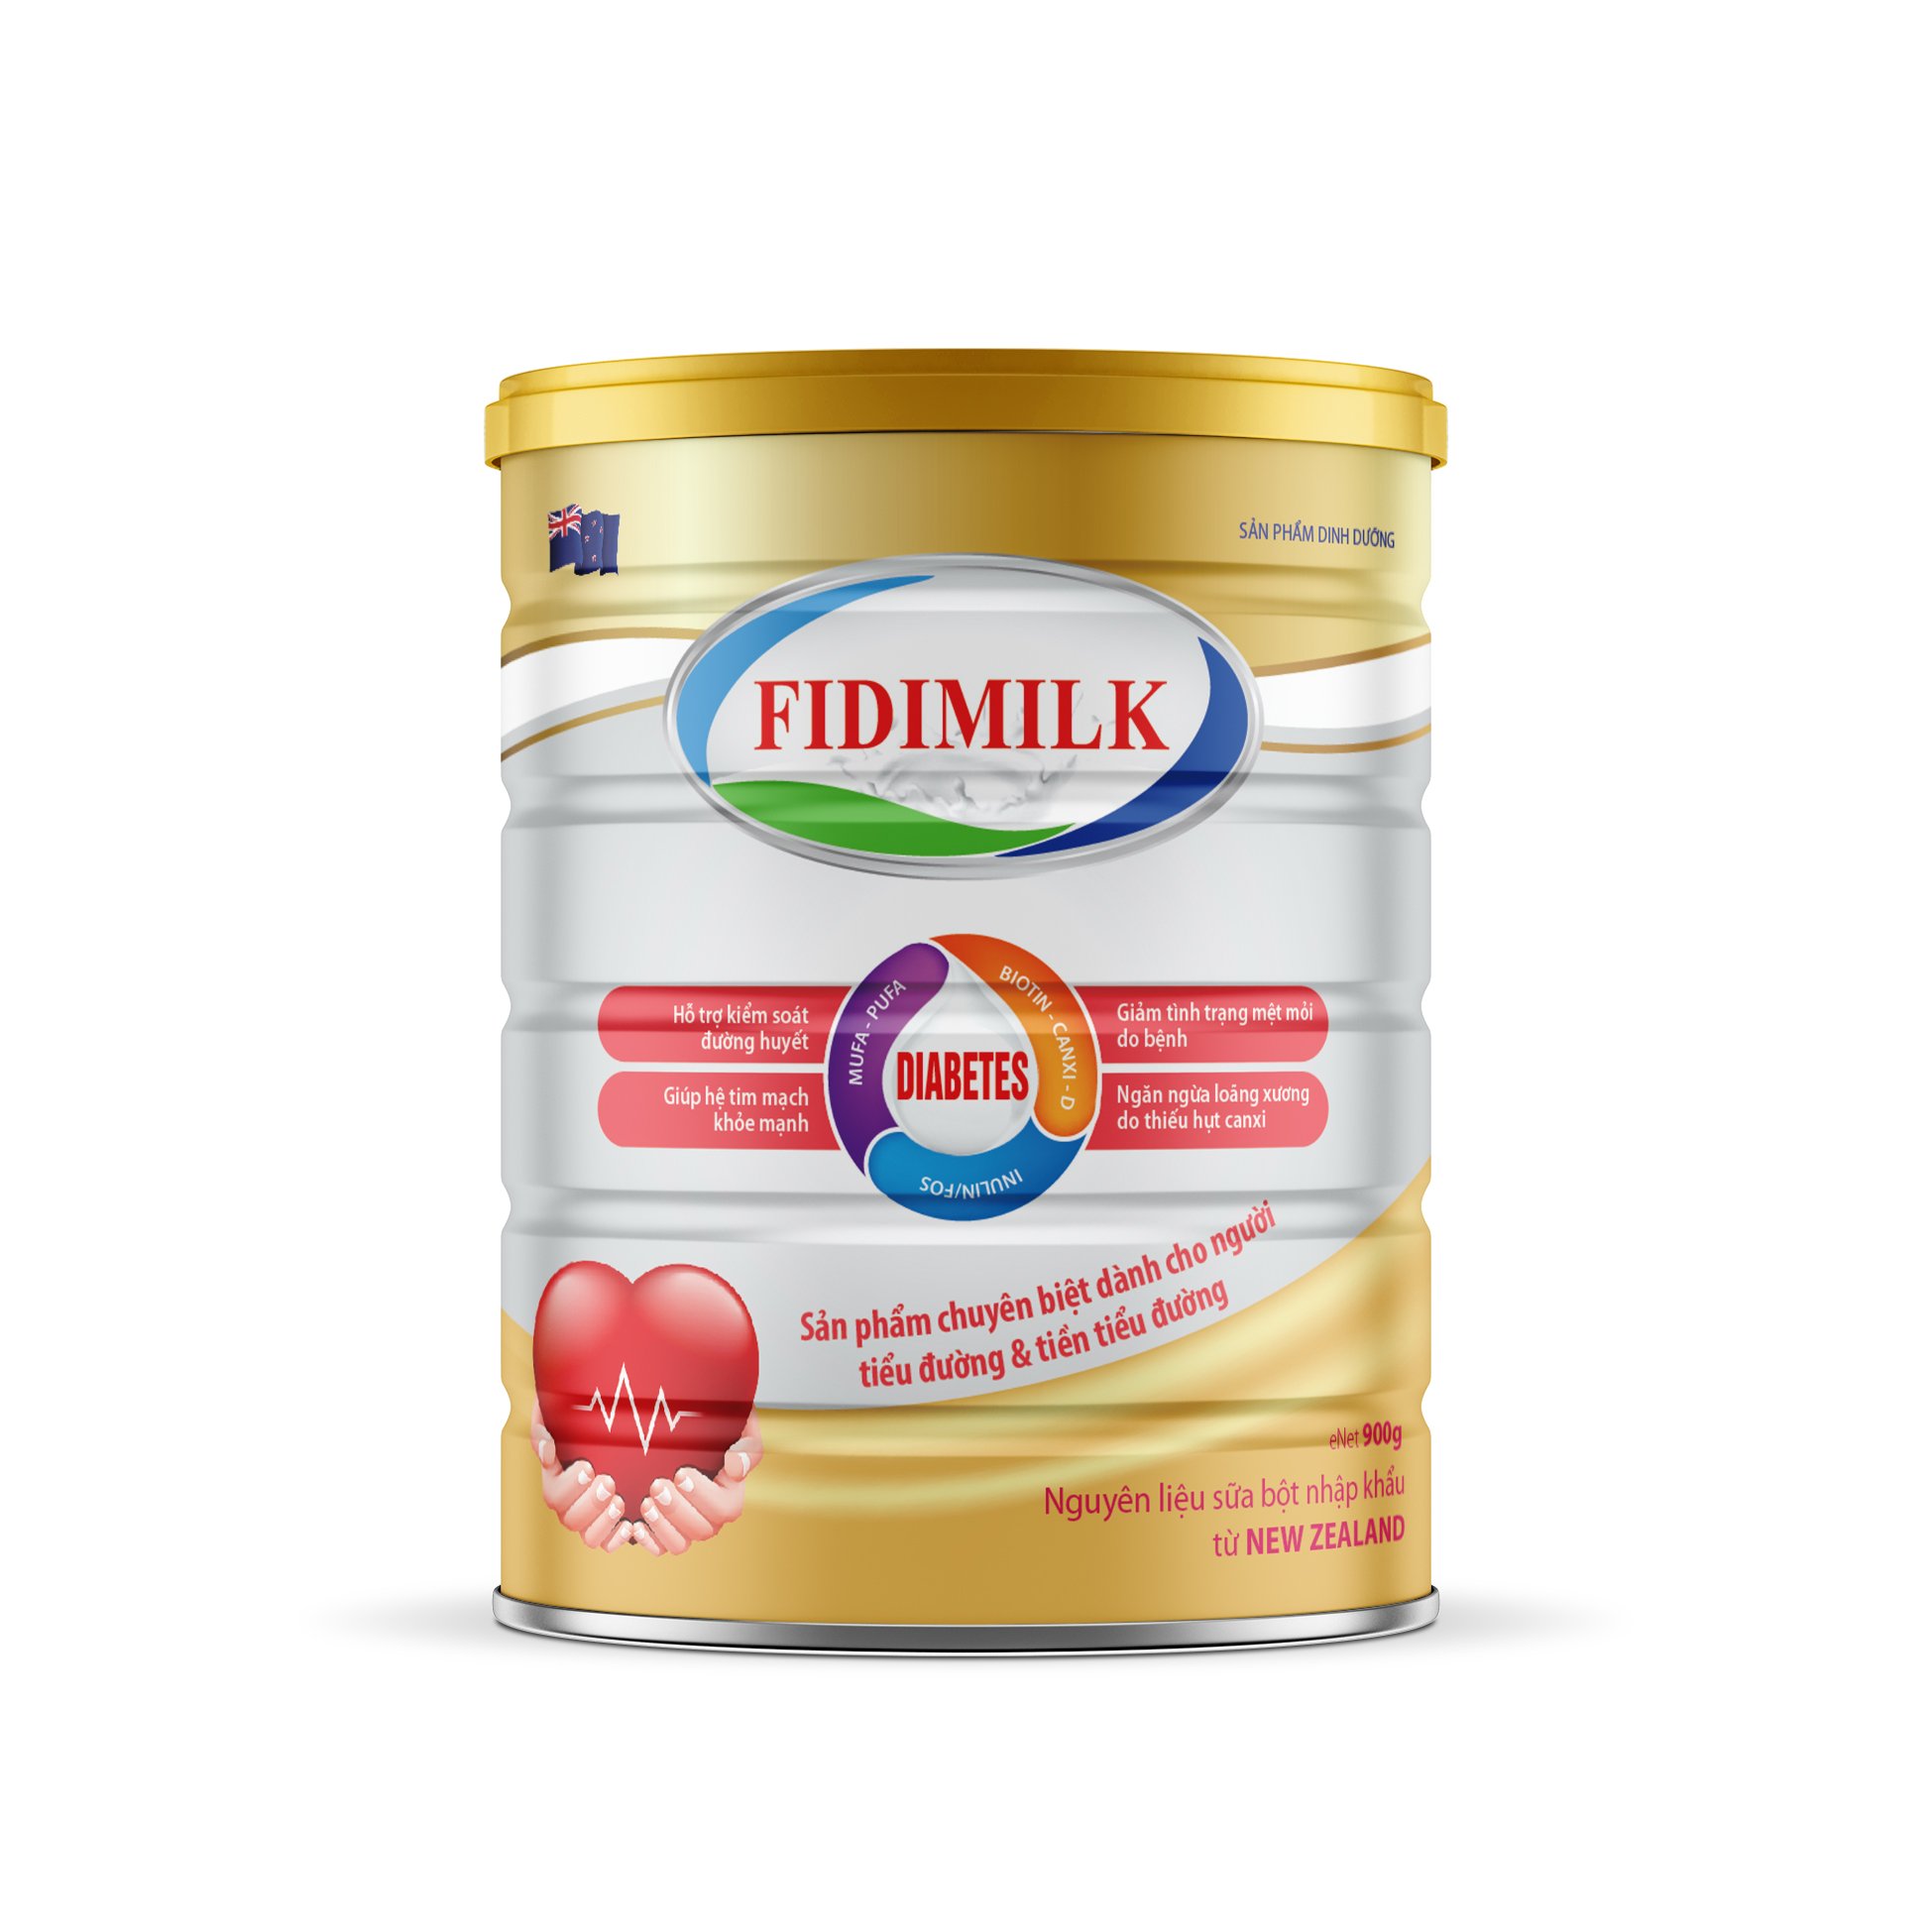 Combo 3 lon Sữa bột FIDIMILK DIABETES lon 900g - Dinh dưỡng dành cho người tiểu đường và tiền tiểu đường.